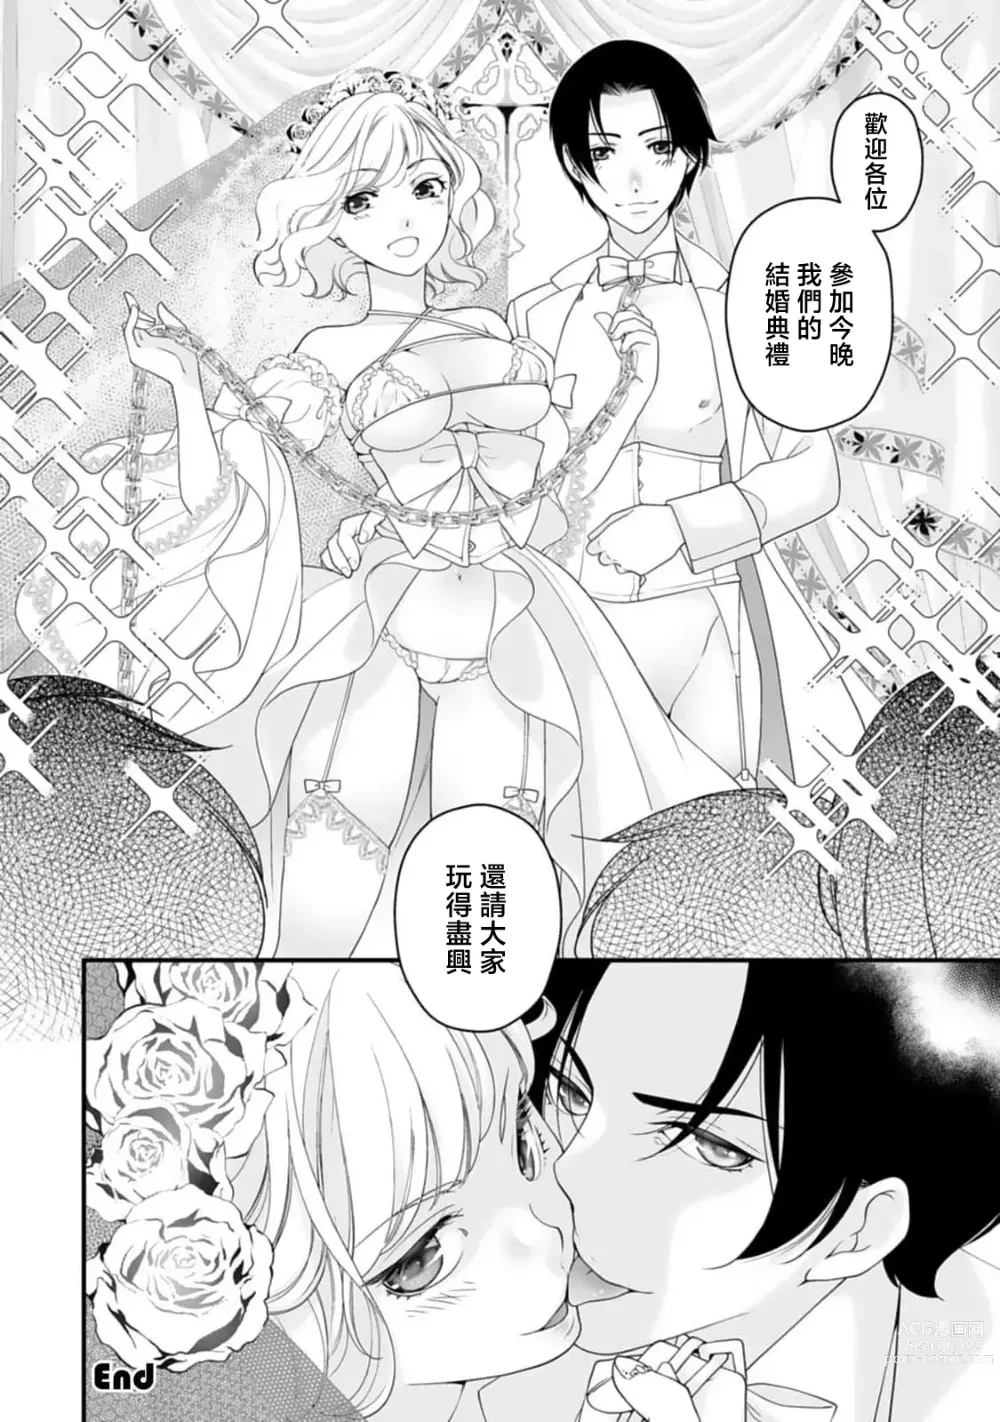 Page 24 of manga 被众人围观的豹变结婚典礼，新娘想夺回最爱的丈夫